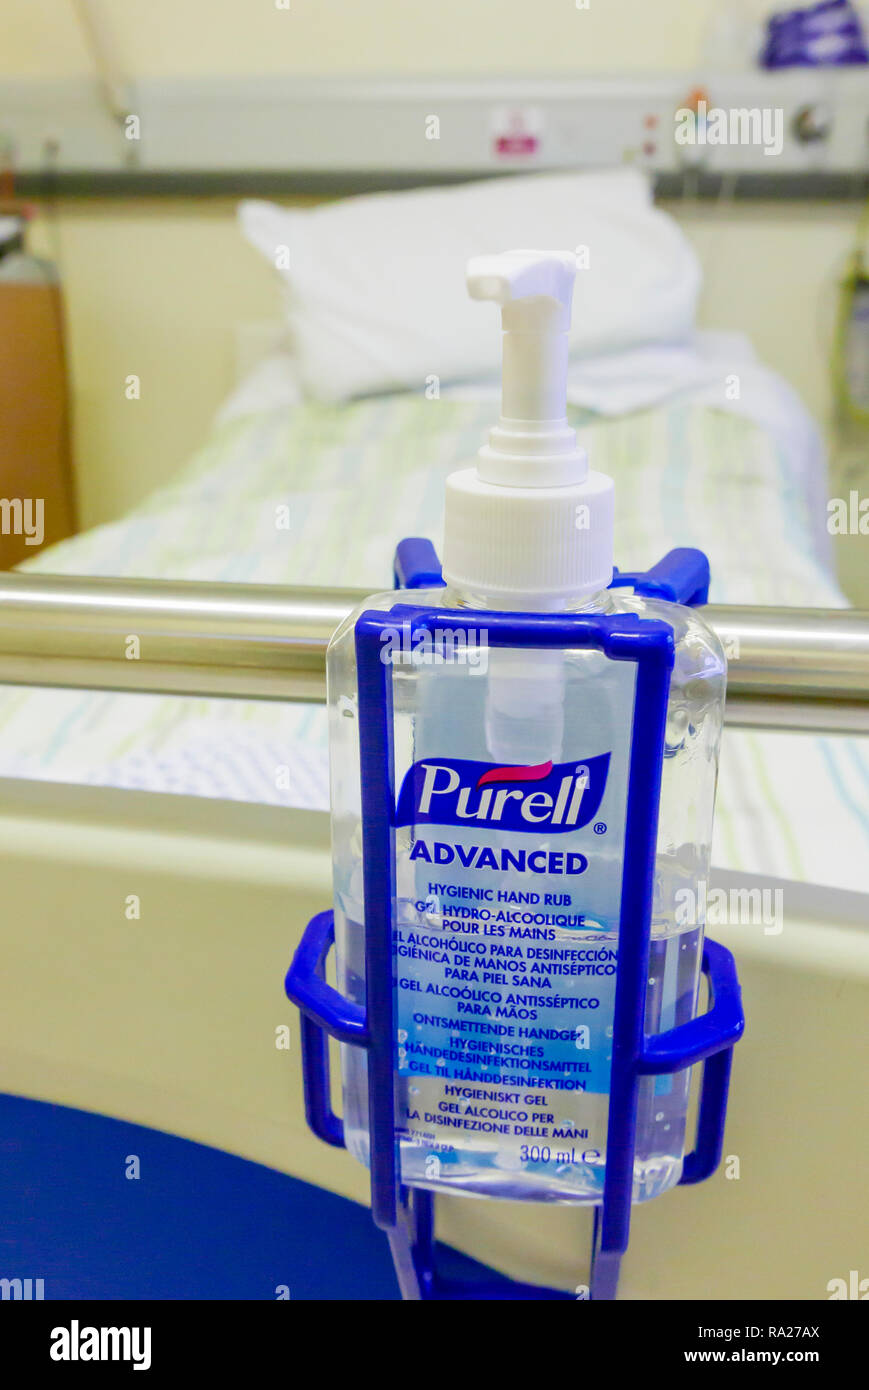 Botella de alcohol avanzado Purell mano higiénico rub al final de la cama de un hospital. Foto de stock